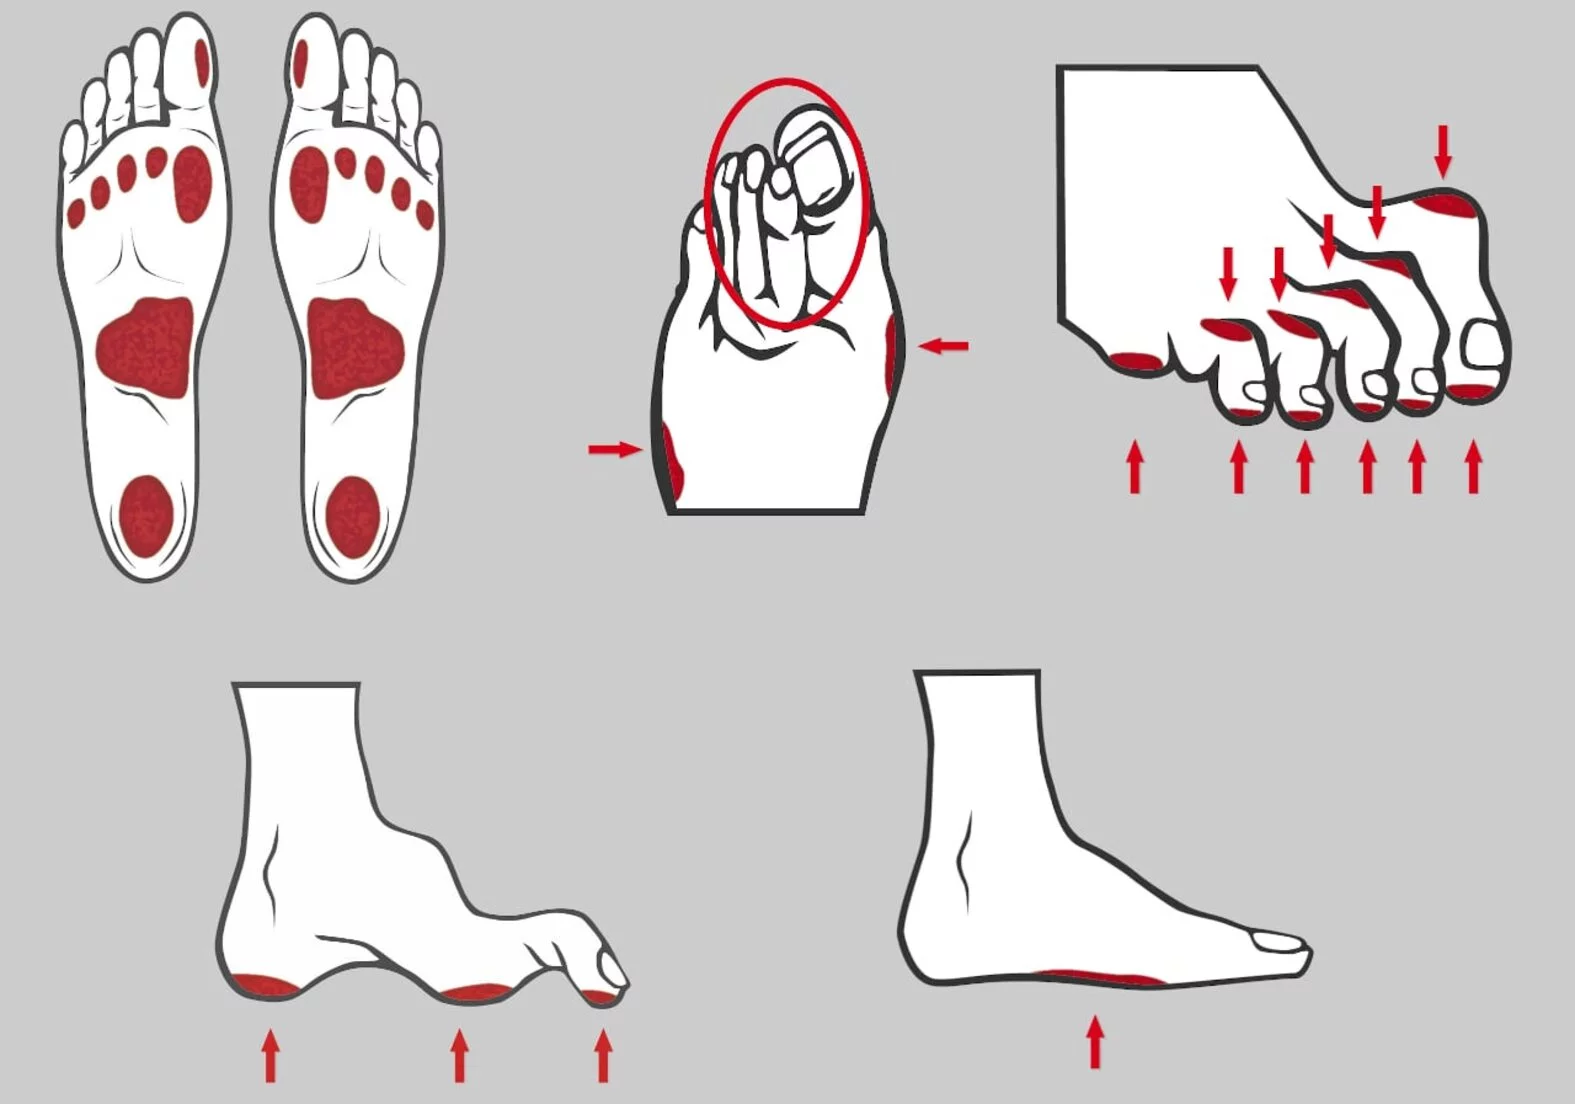 Von sensorischer Neuropathie/Muskeldystrophie potentiell betroffene kleine Fußmuskeln